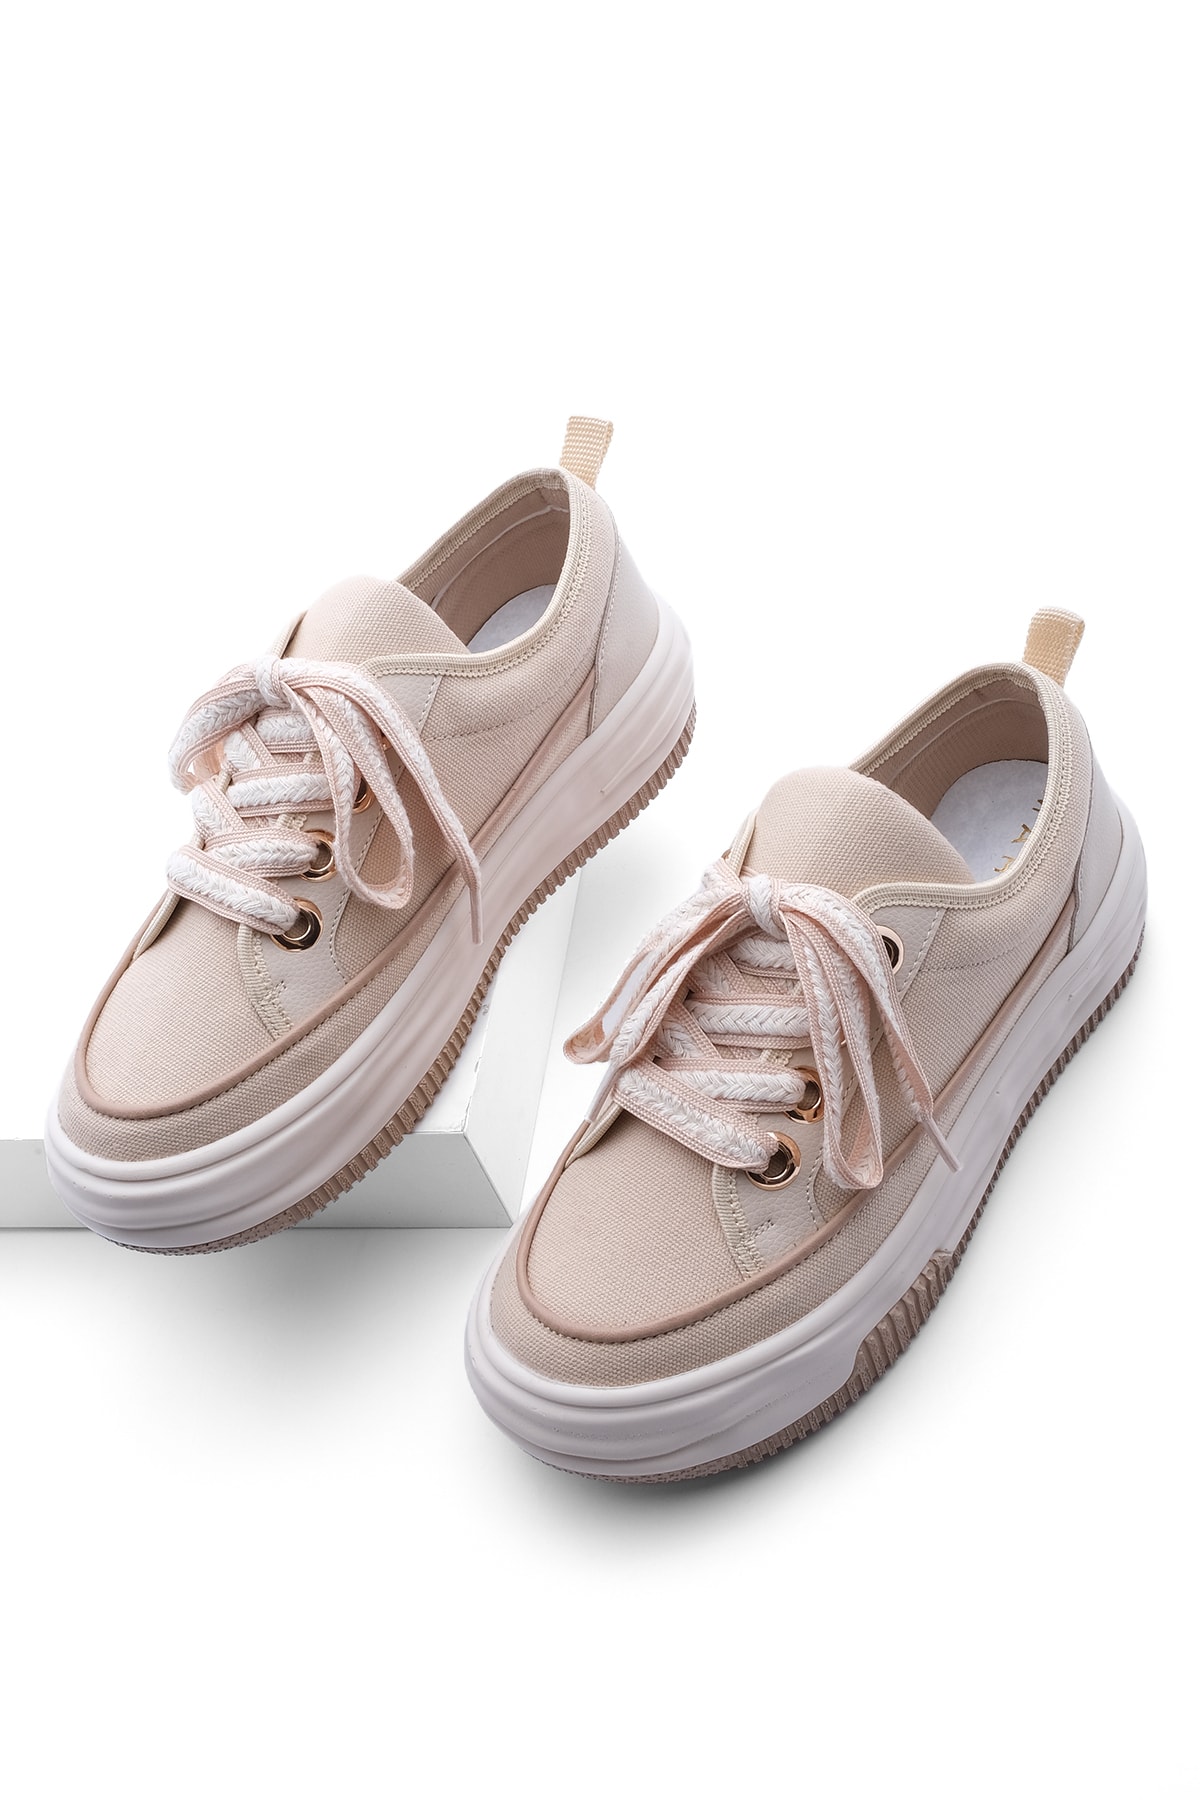 Levně Marjin Women's High-Sole Sneakers, Linen Fabric Lace-Up Sneakers Hesna beige